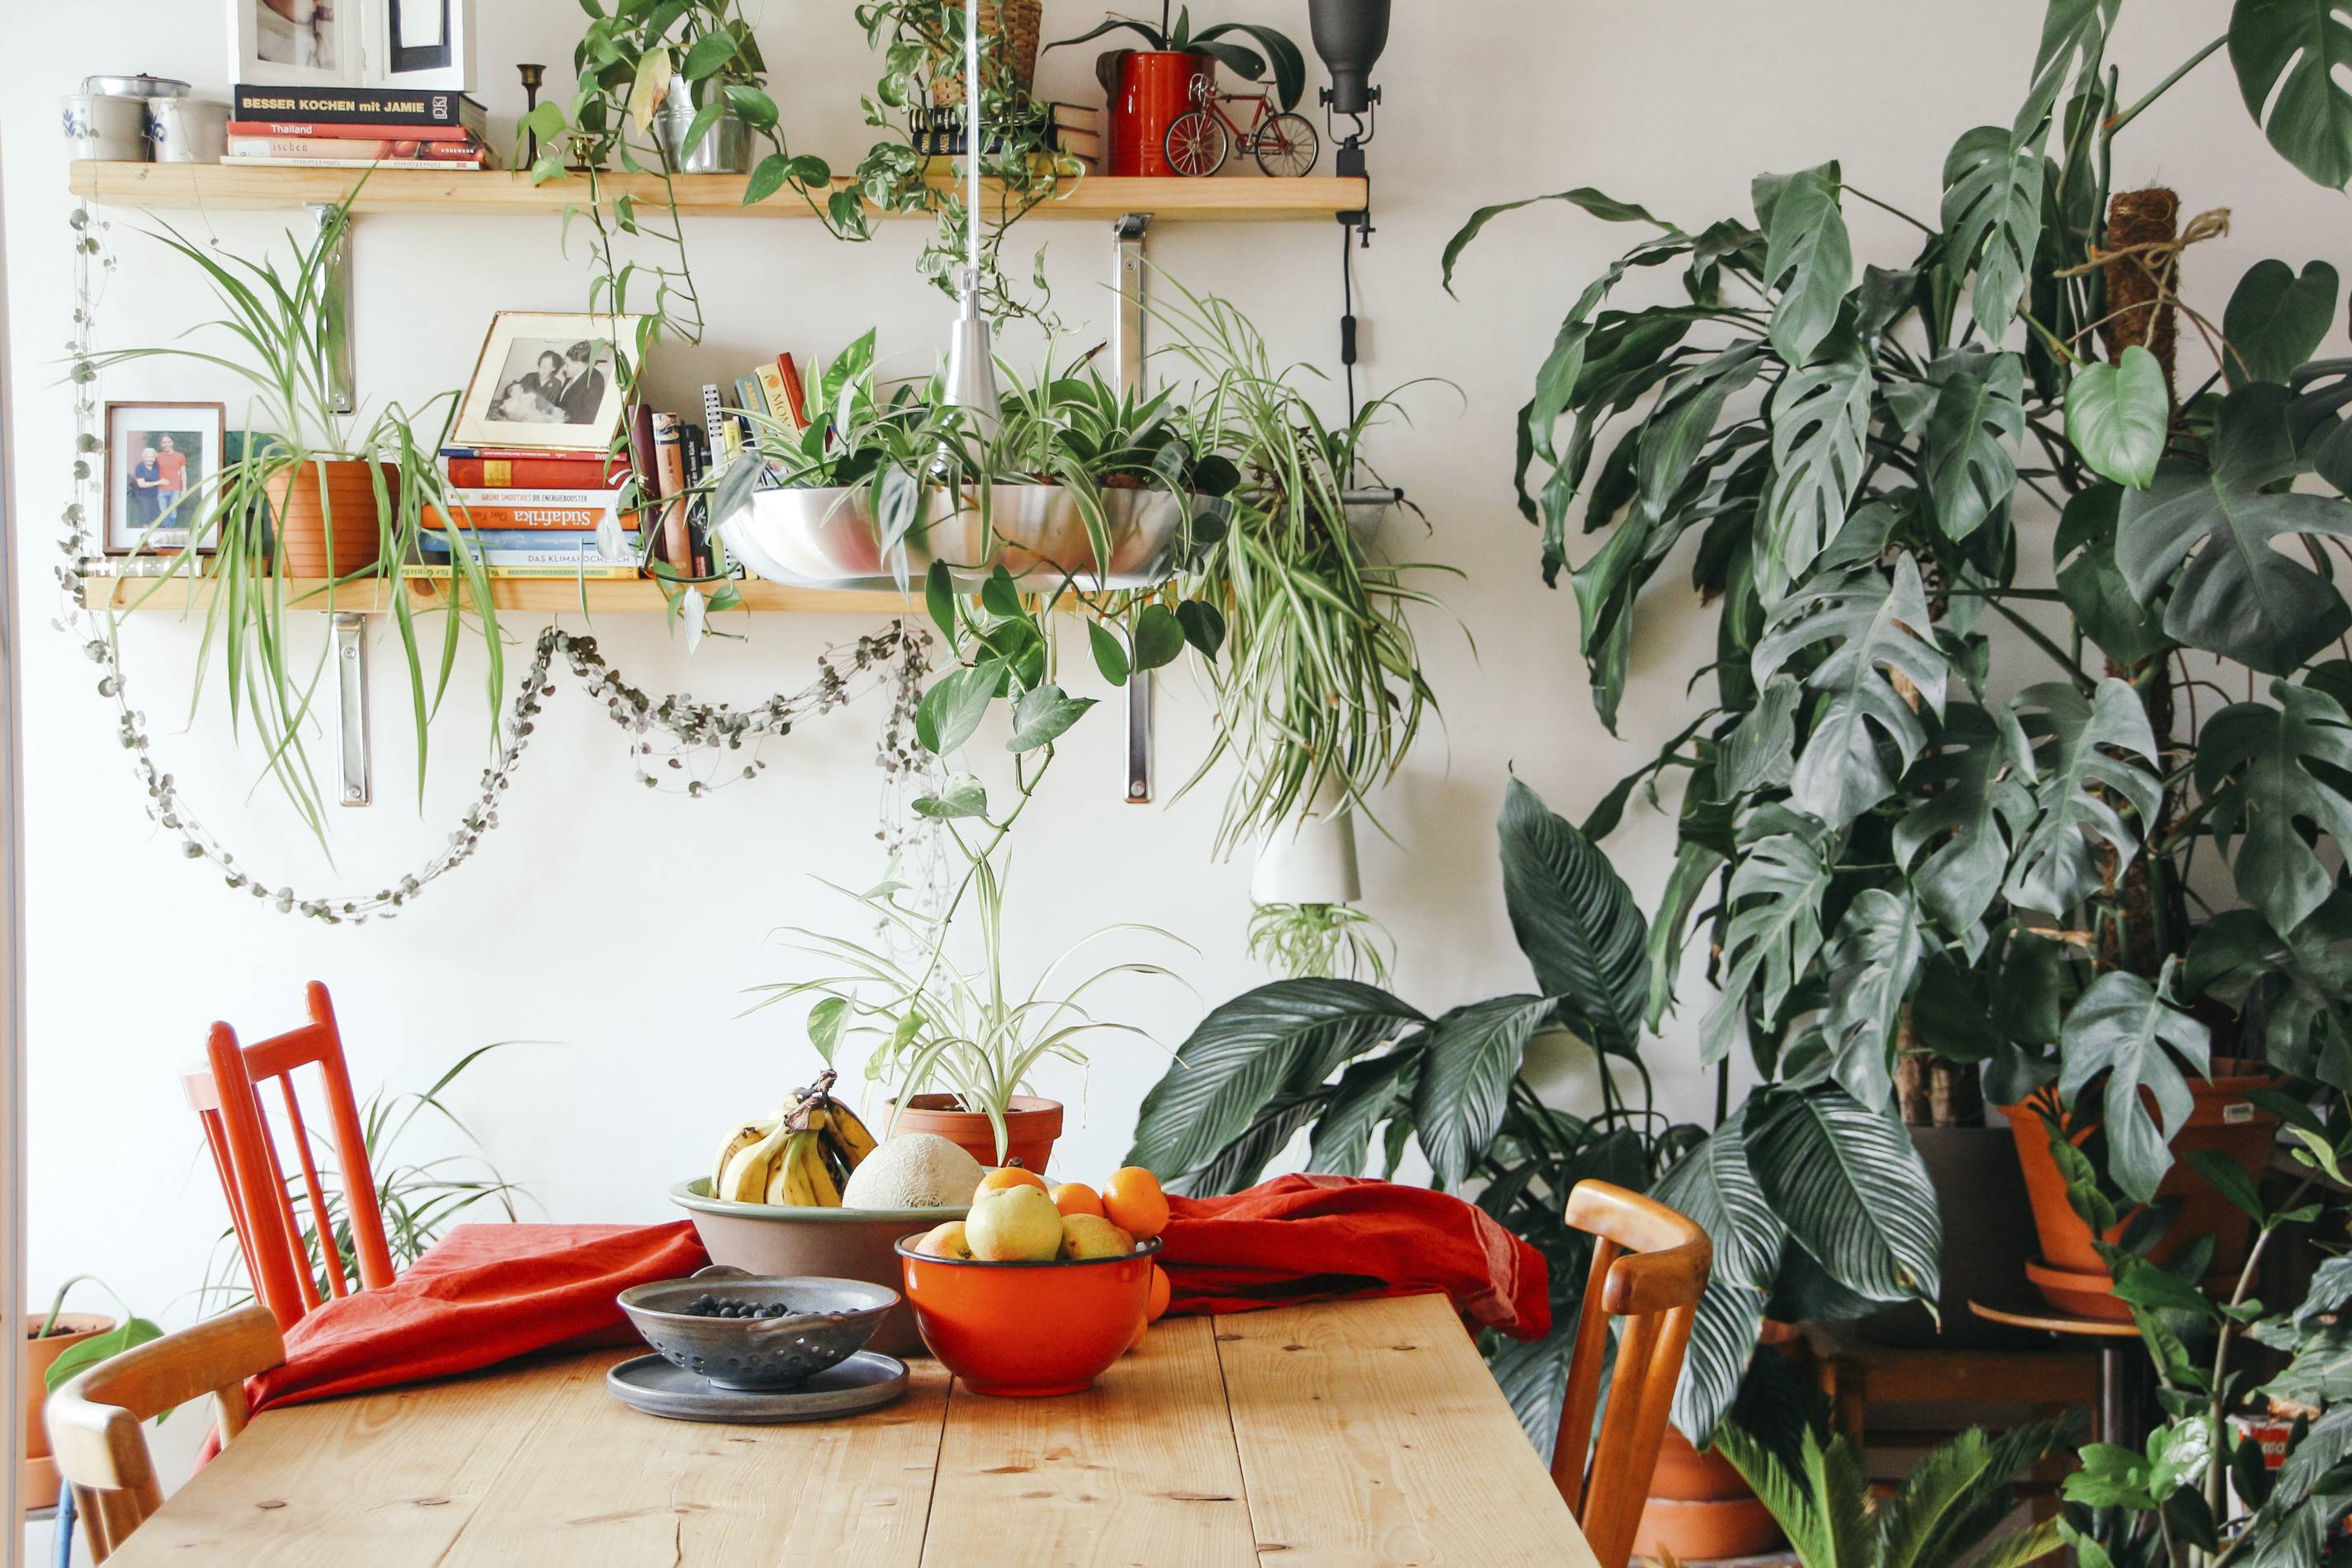 indoor plants by brina blum on unsplash